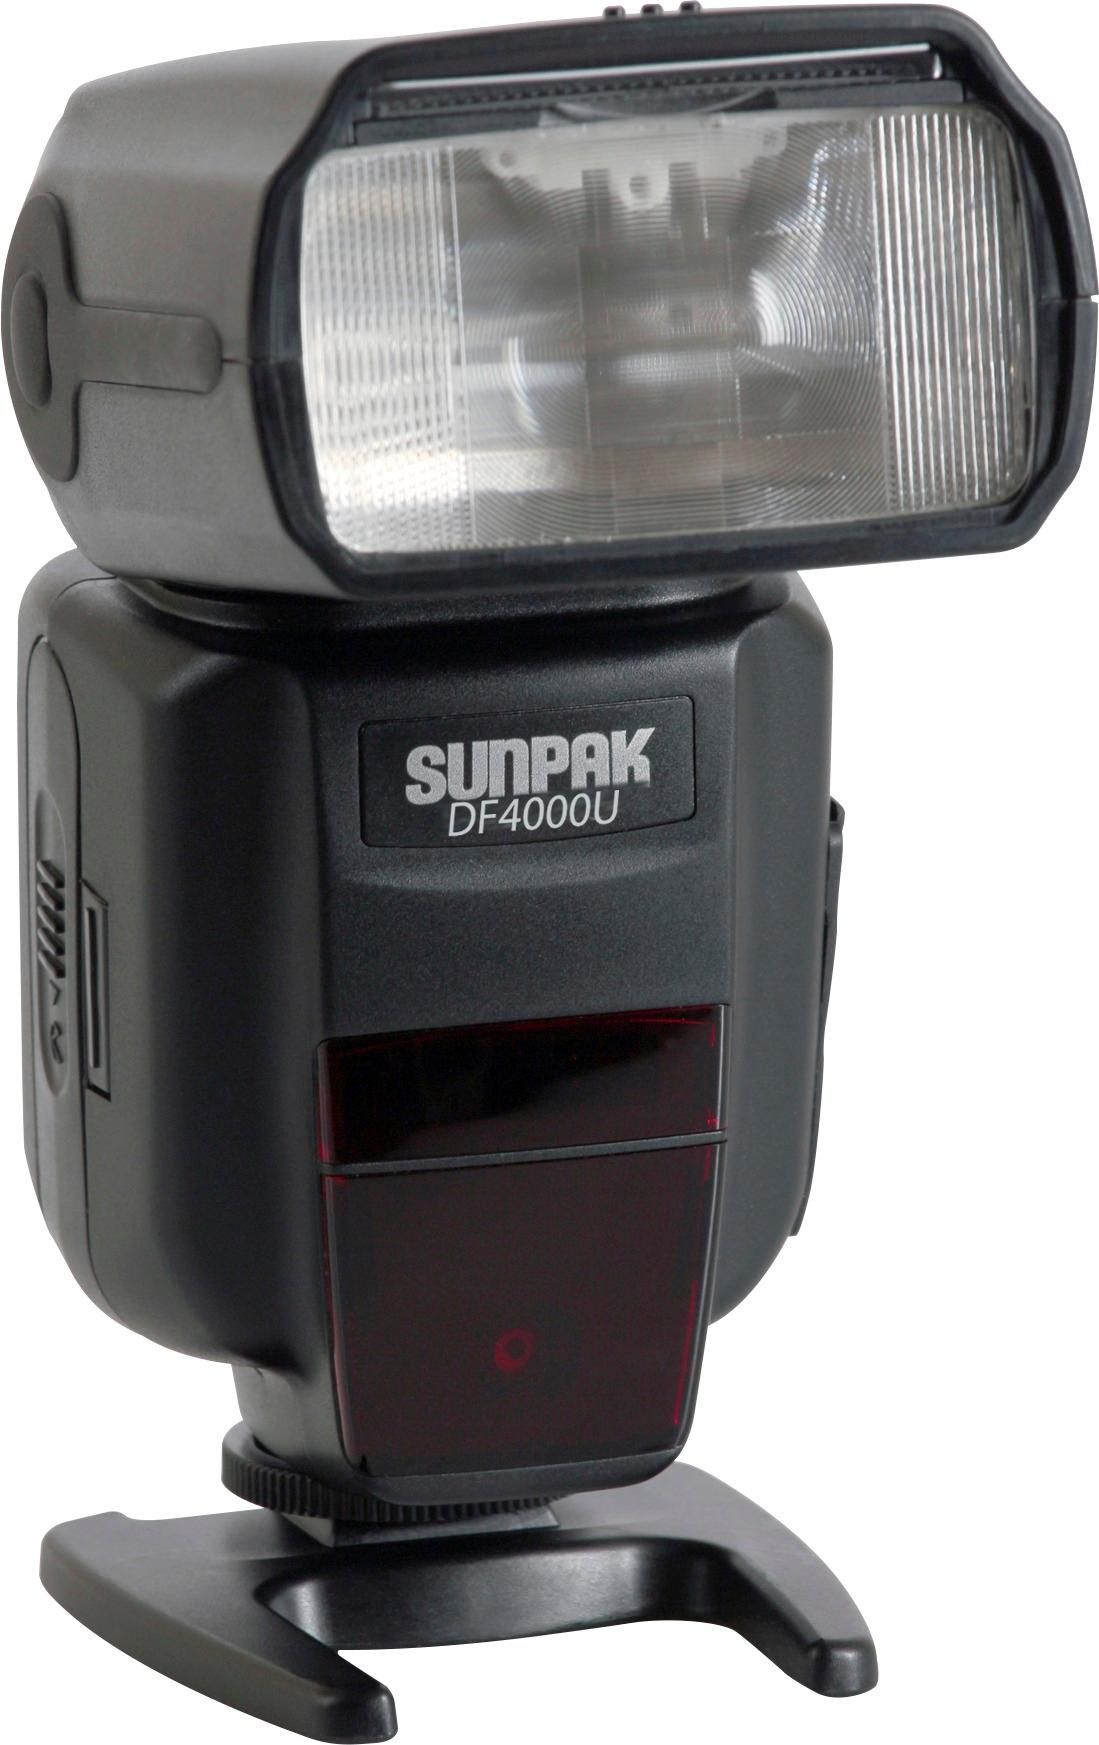 Sunpak DF4000U External Flash DF4000U-CN - Best Buy | Best Buy U.S.